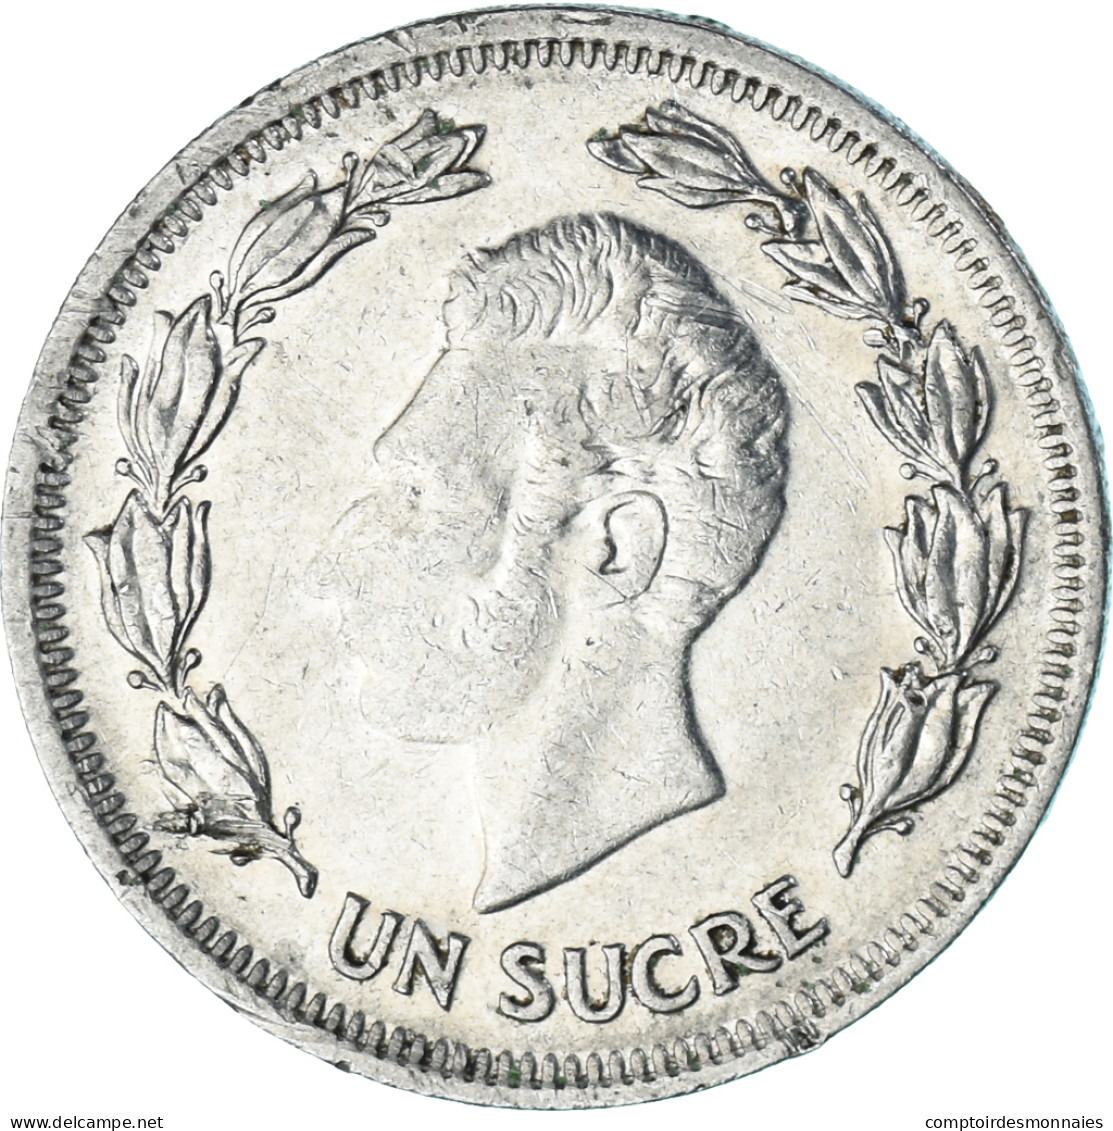 Monnaie, Équateur, Sucre, Un, 1975 - Ecuador